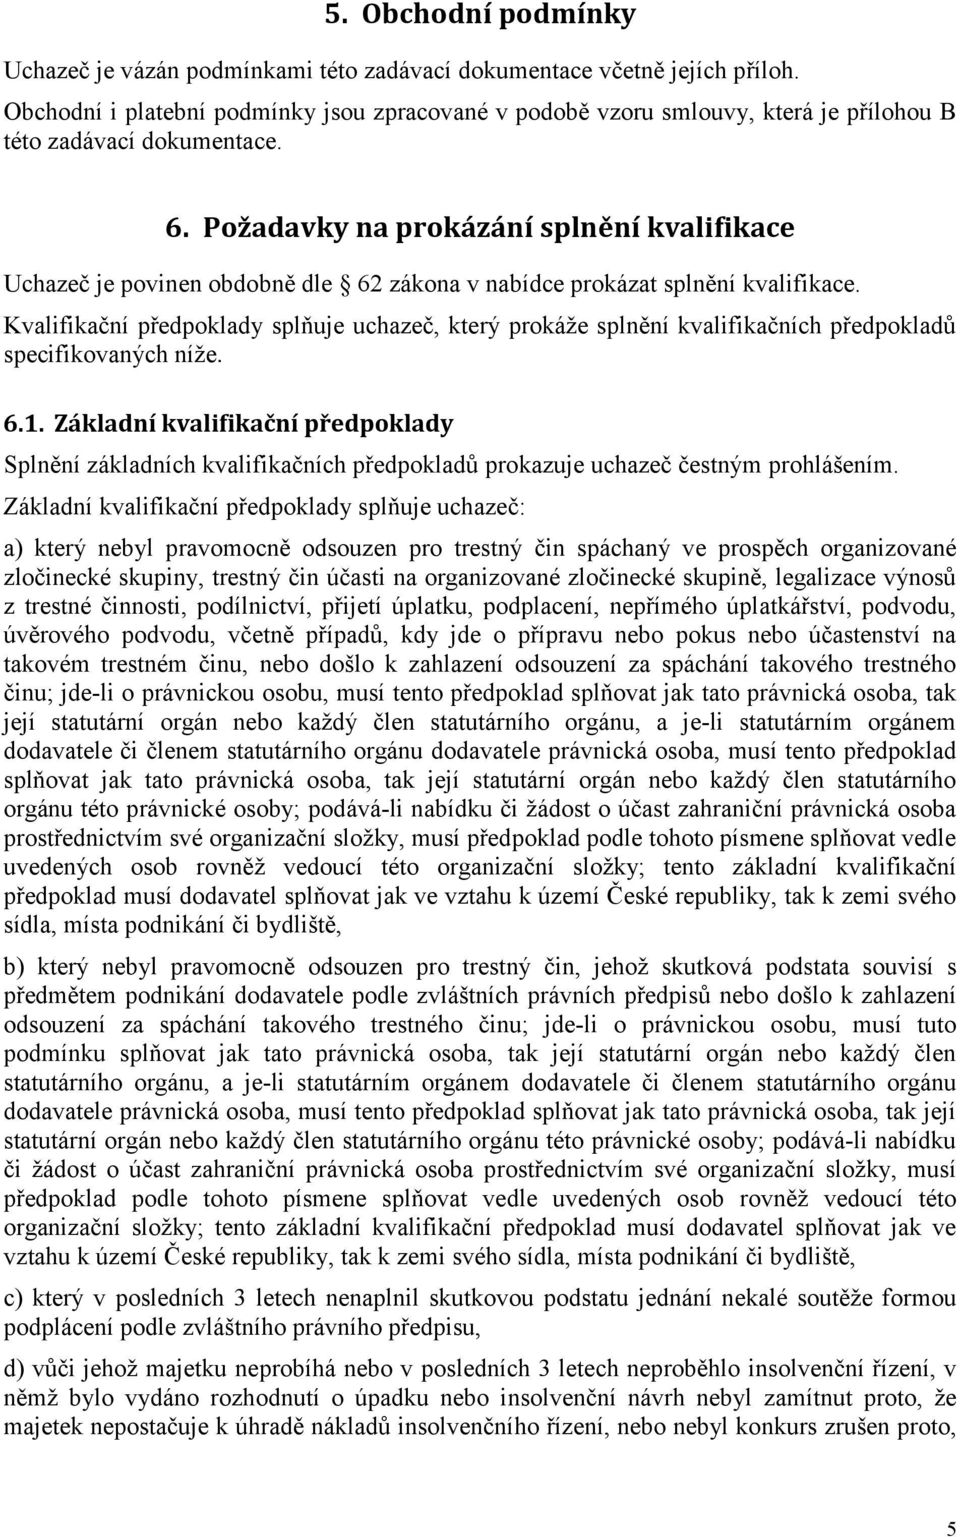 Požadavky na prokázání splnění kvalifikace Uchazeč je povinen obdobně dle 62 zákona v nabídce prokázat splnění kvalifikace.